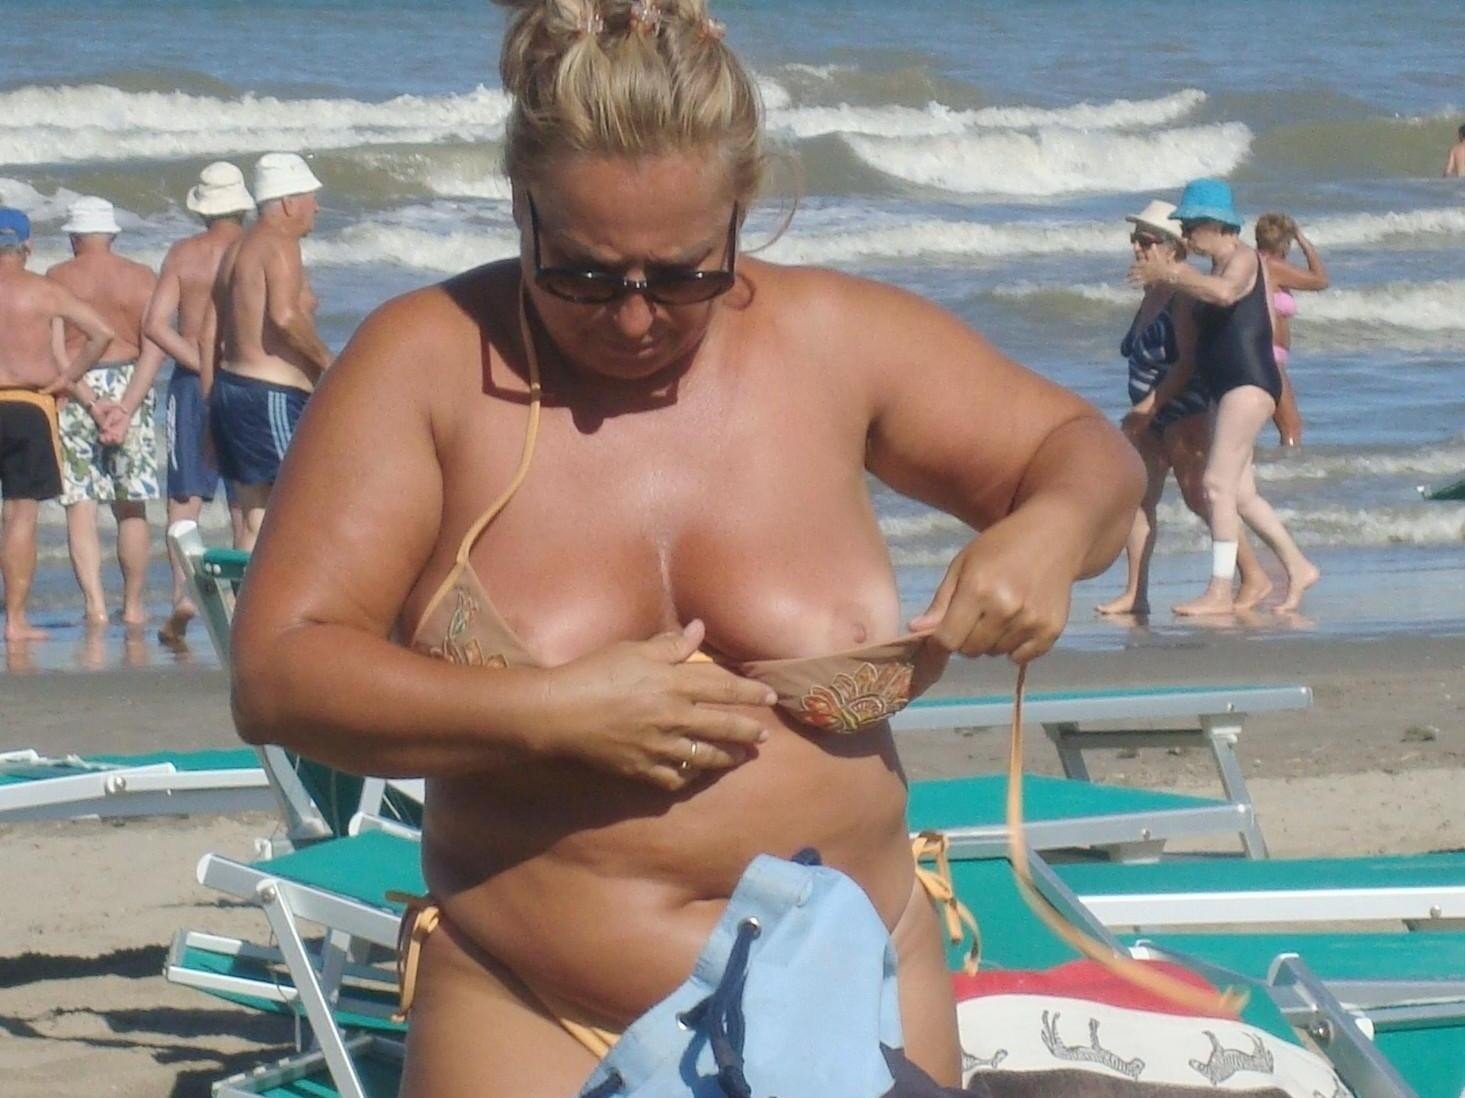 https://boombo.biz/en/nude/uploads/posts/2022-12/1670106639_boombo-biz-p-granny-beach-topless-erotika-instagram-27.jpg